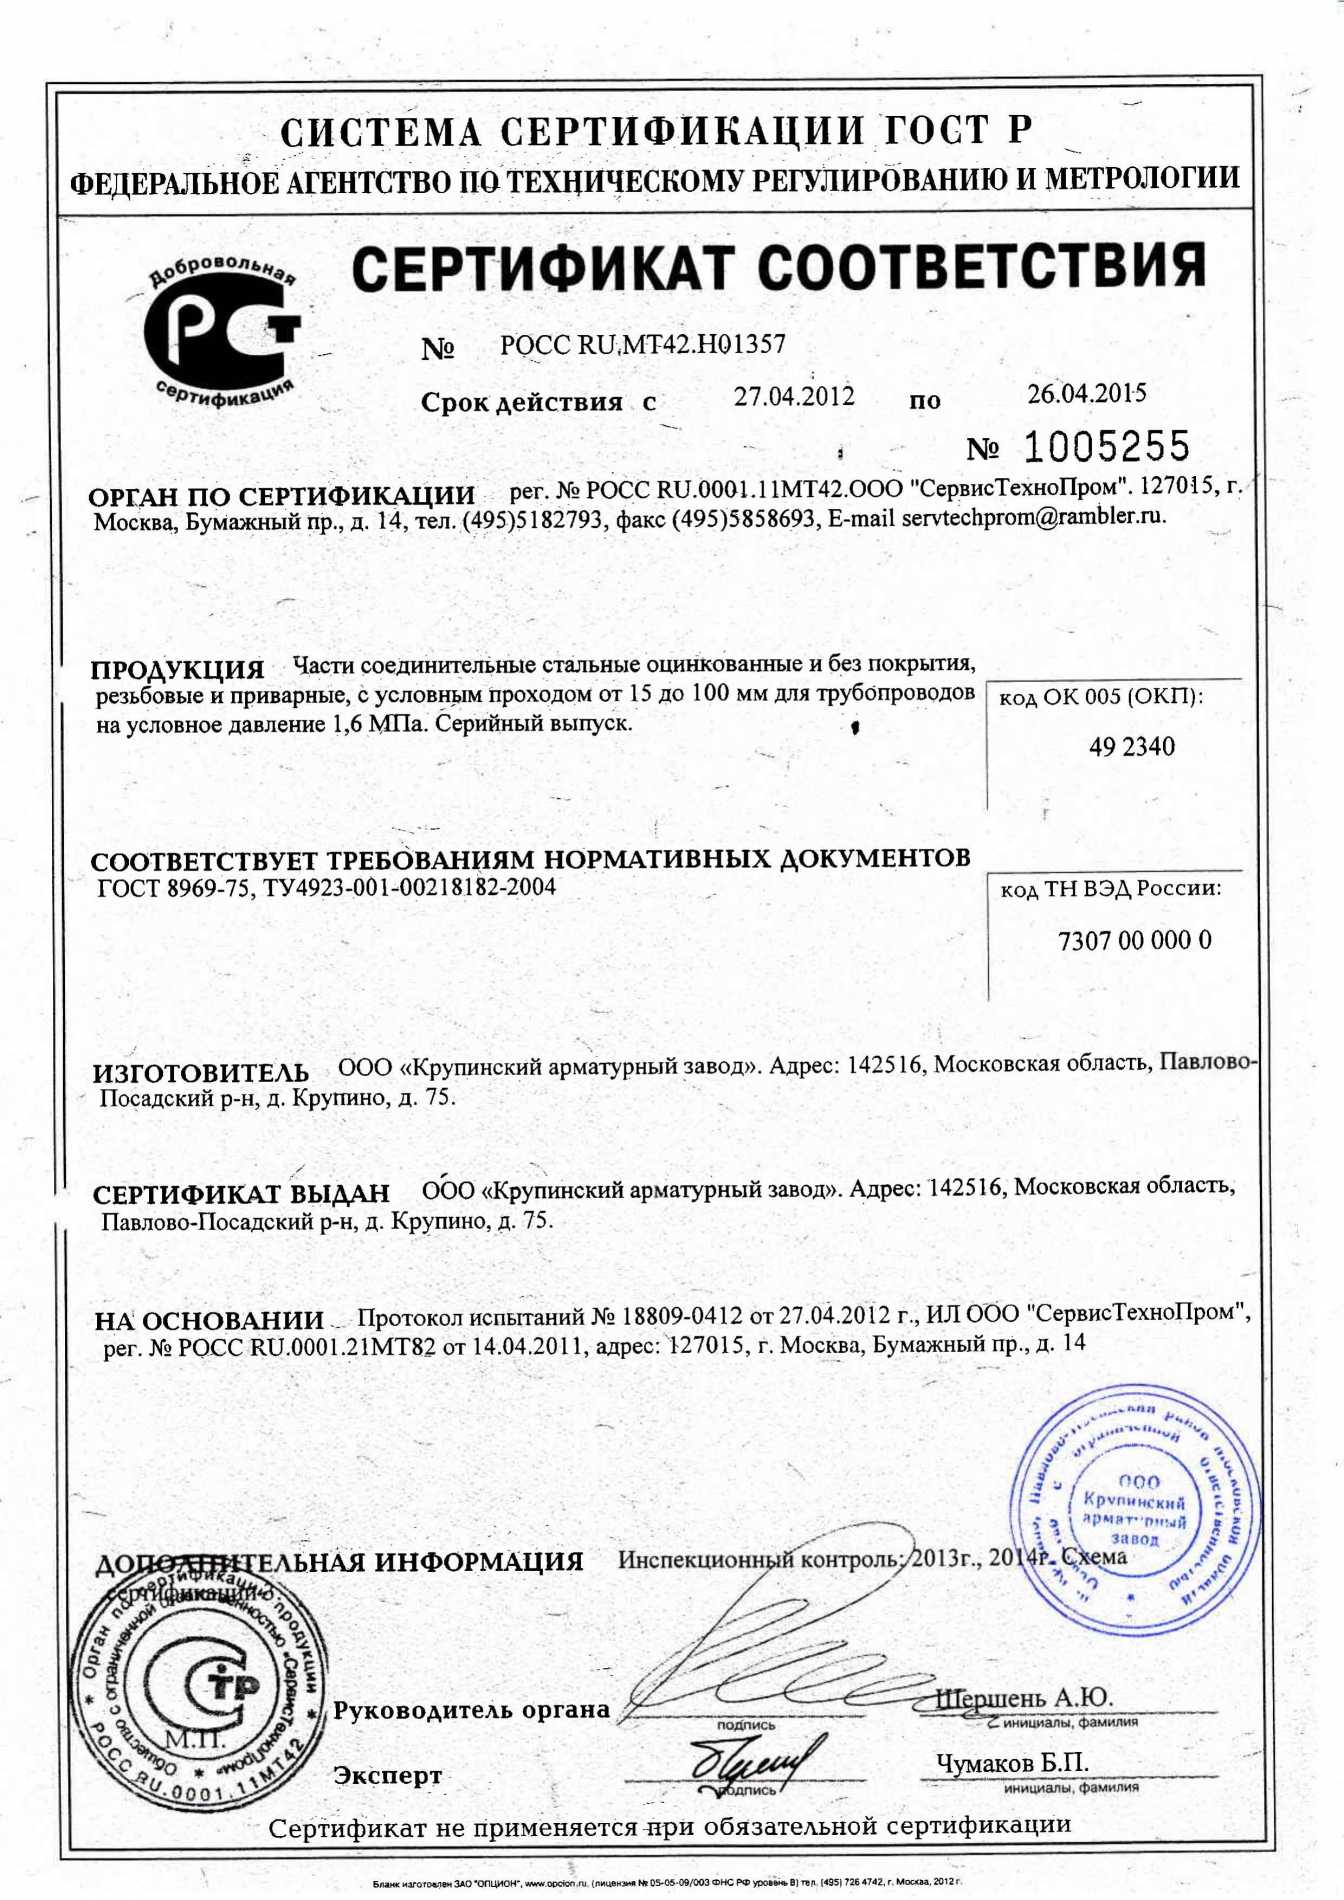 Крупинский арматурный завод сертификат соответствия